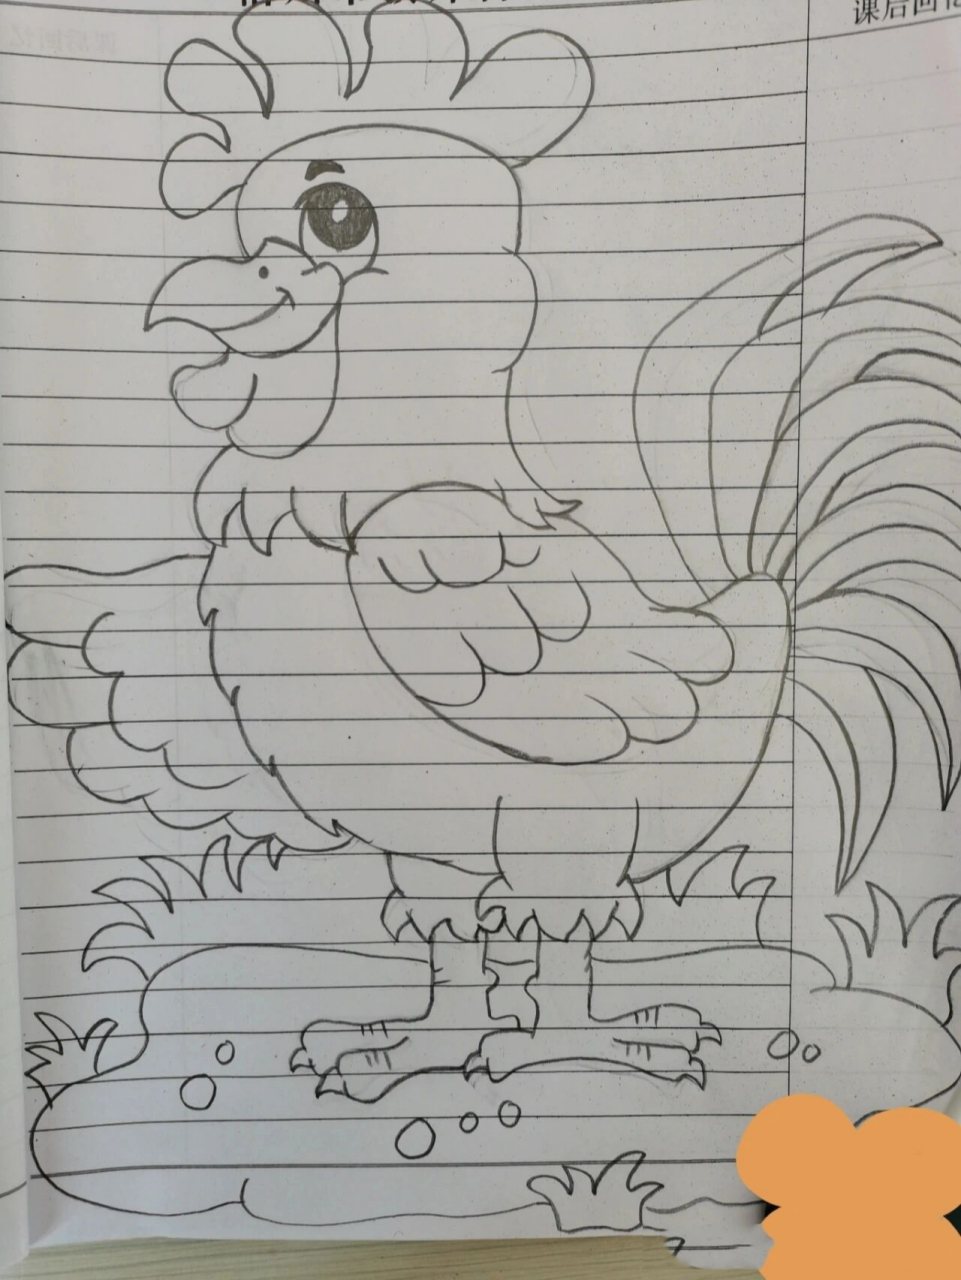 公鸡简笔画简单图片